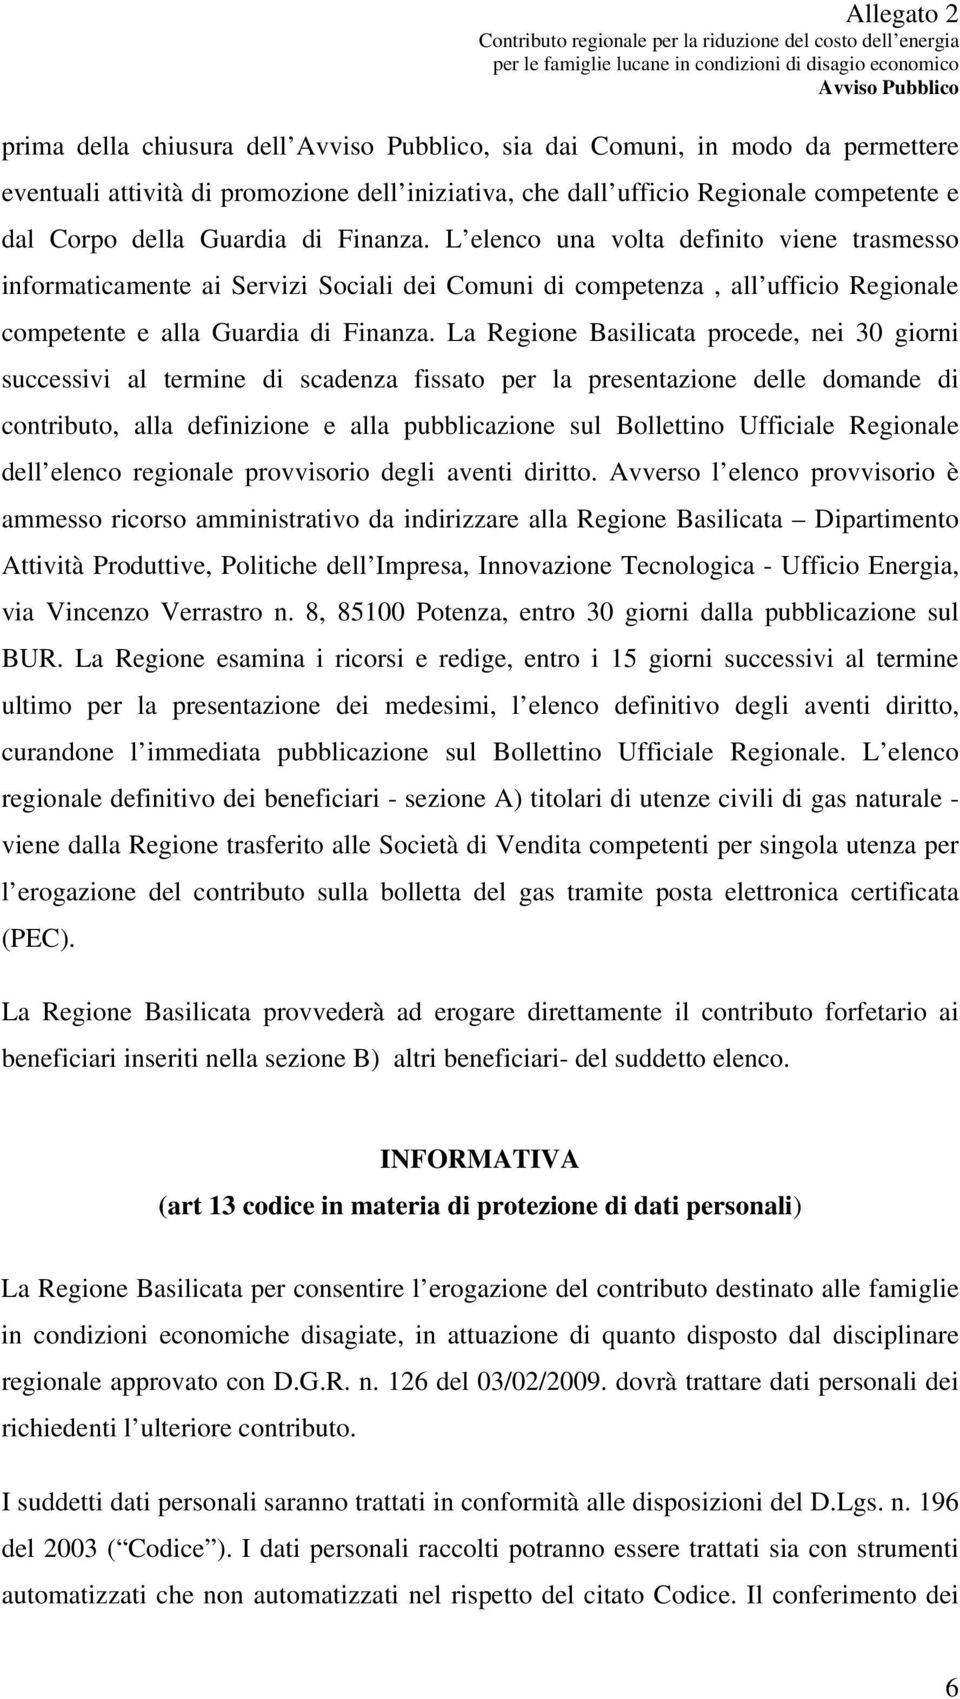 La Regione Basilicata procede, nei 30 giorni successivi al termine di scadenza fissato per la presentazione delle domande di contributo, alla definizione e alla pubblicazione sul Bollettino Ufficiale